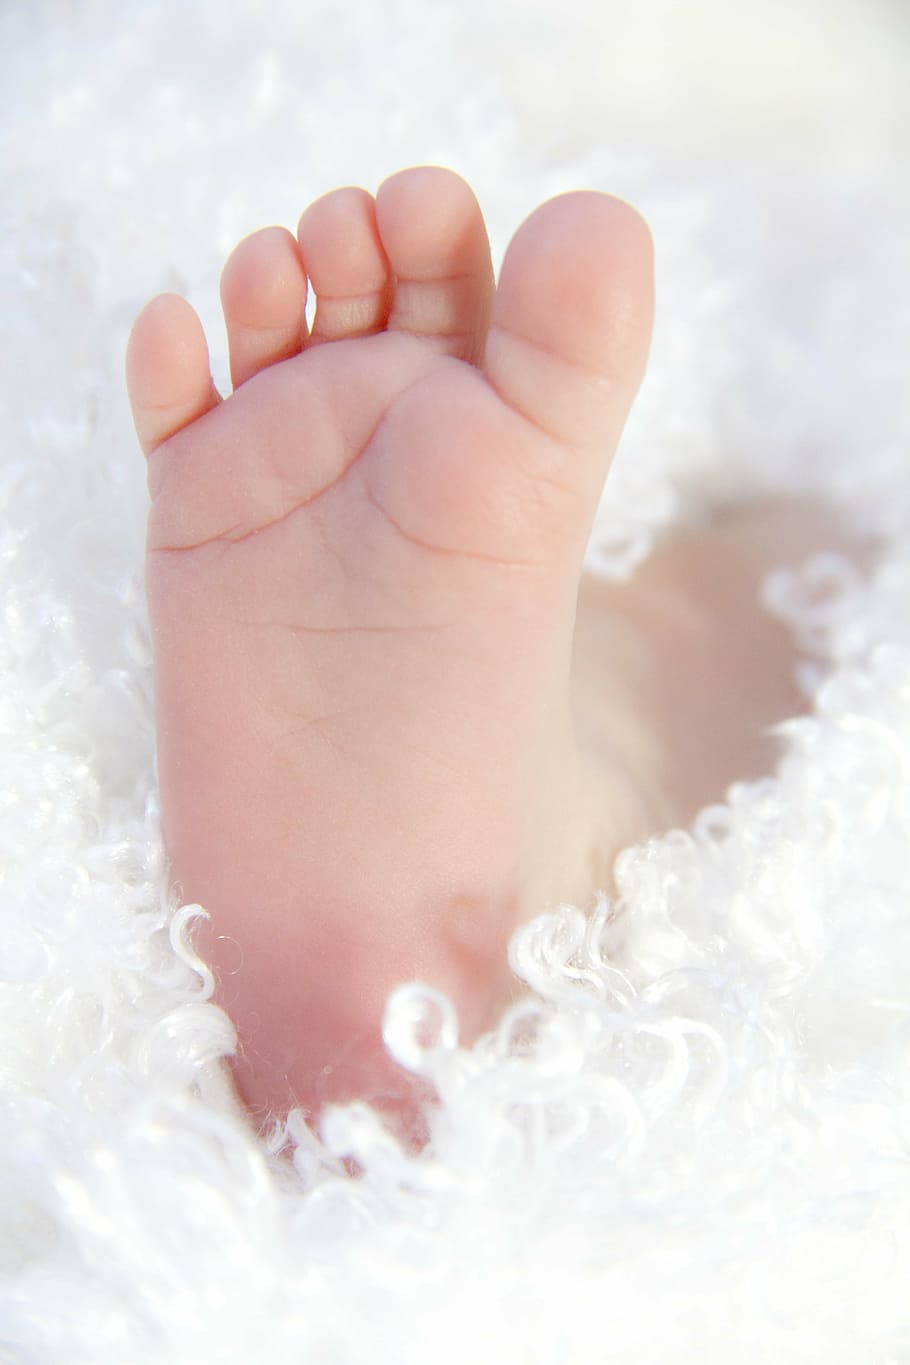 bebê, pé, raso, fotografia com foco, pés, recém-nascido, criança, pequeno, infância, amor